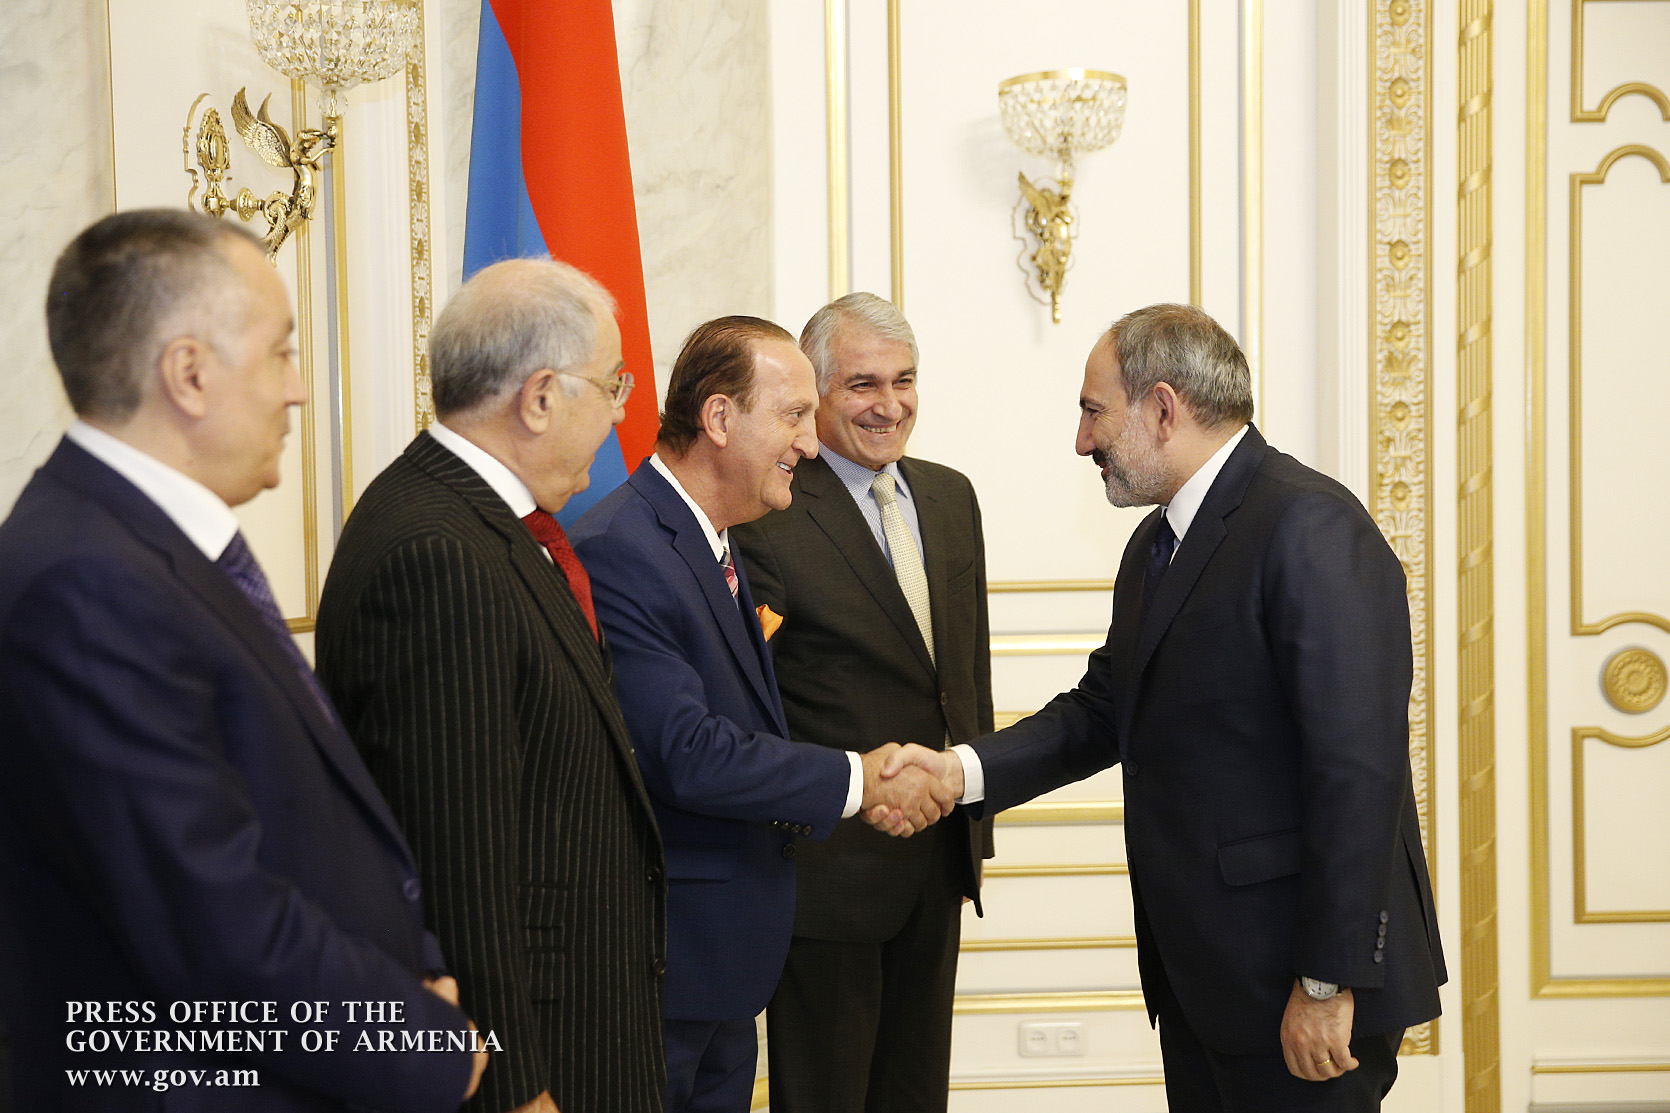 Армянские инвесторы из диаспоры представили премьеру различные инвестиционные проекты